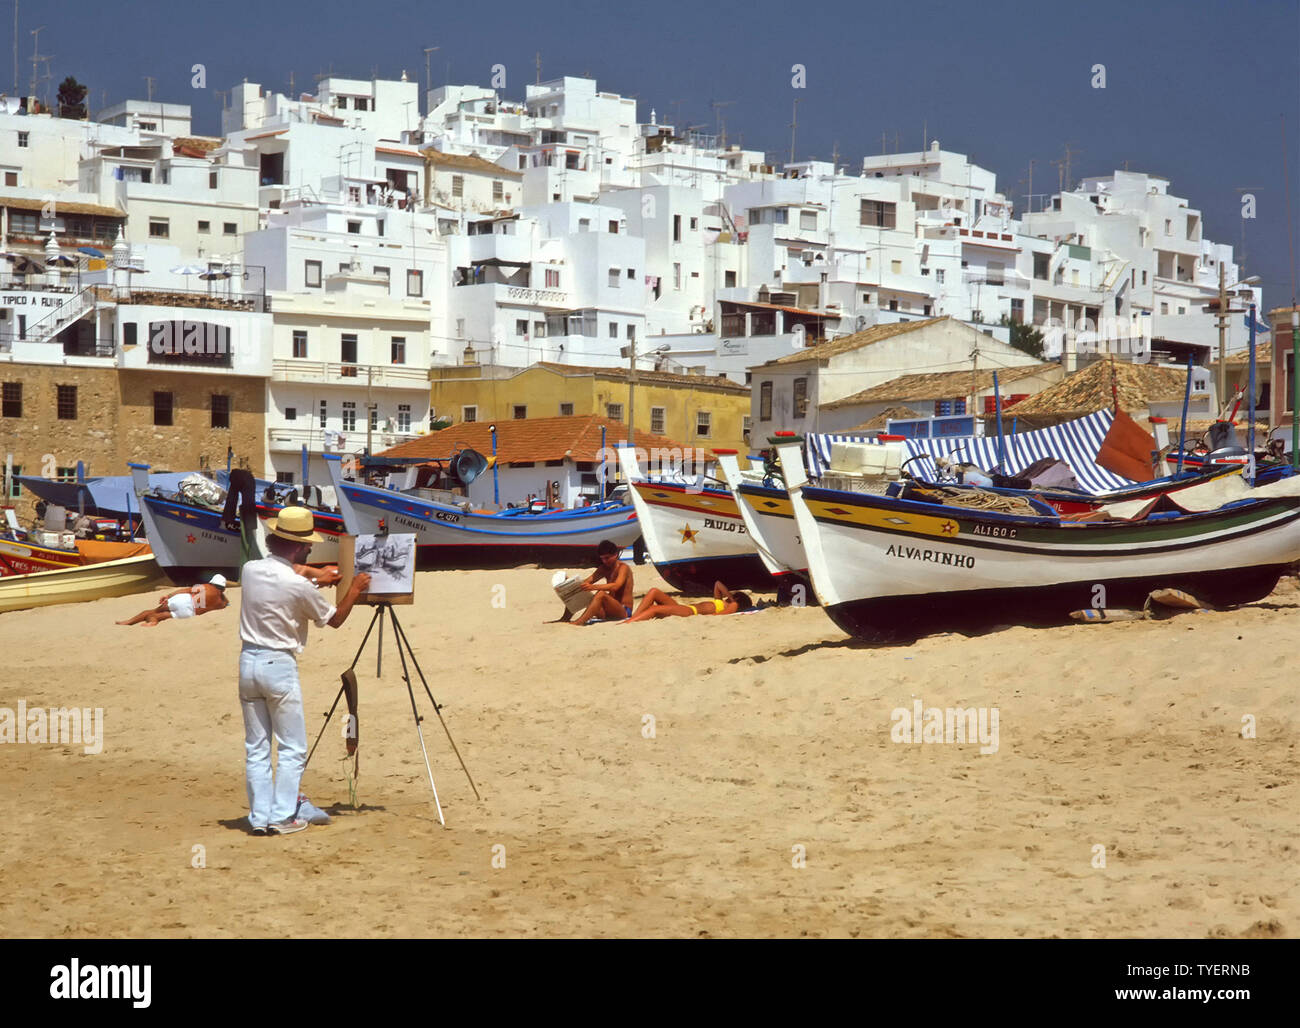 Man1980s artiste au travail sous ciel bleu clair avec tableau blanc esquisse sur maison de vacances soleil et plage de sable propre bateau de pêche Albufeira Algarve Portugal Banque D'Images